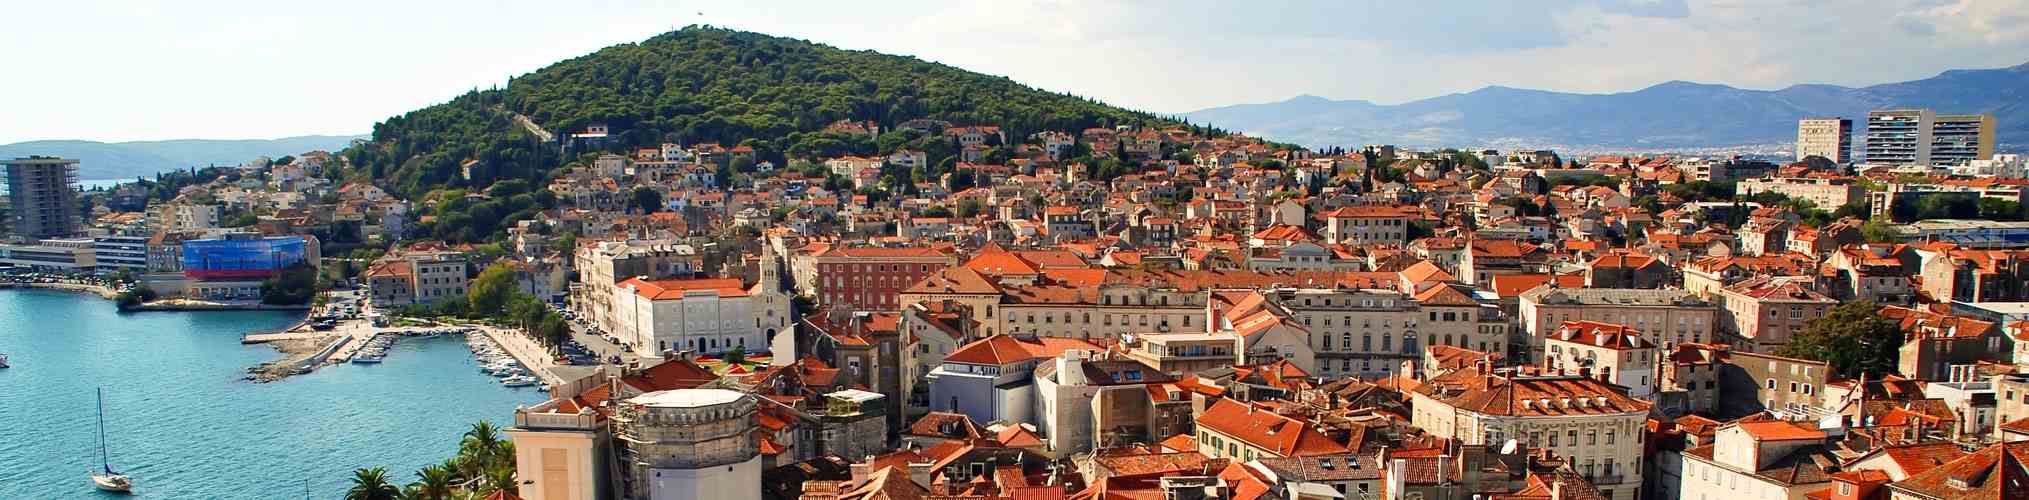 Split, Croacia: vista panorámica